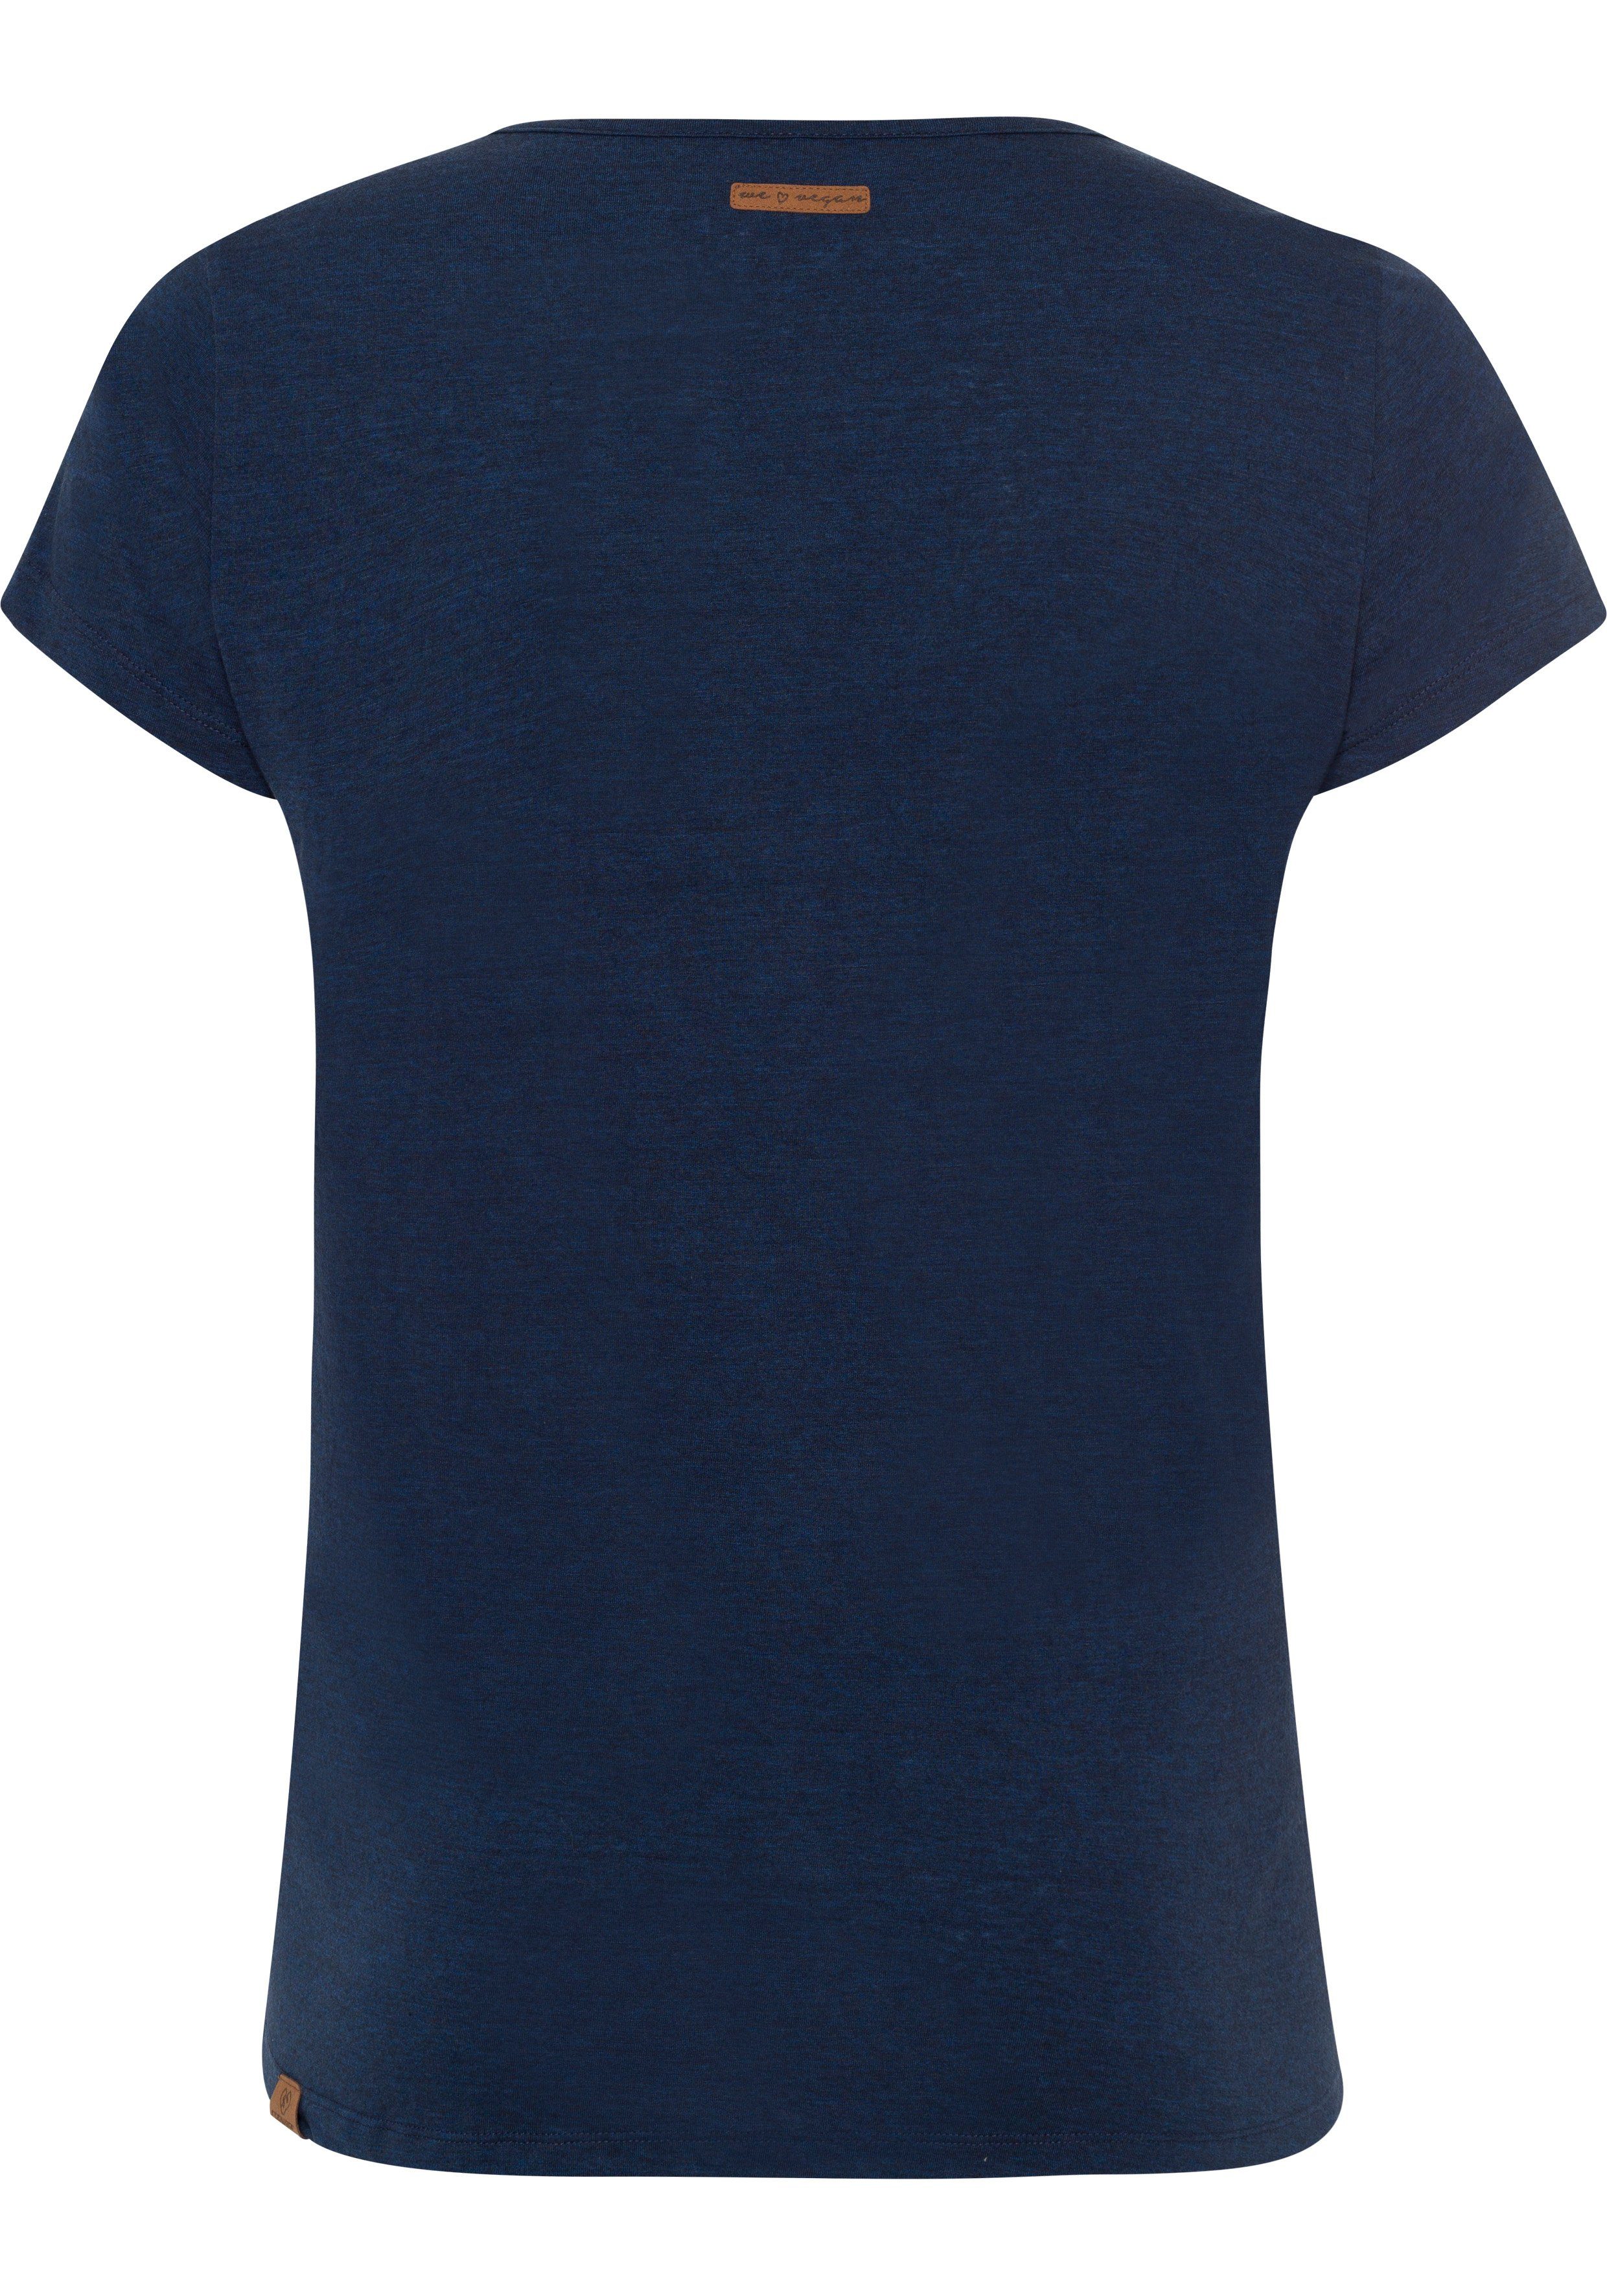 Ragwear Plus T-Shirt MINT A mit PLUS navy und Logoschriftzug natürlicher Holzoptik in 2028 Zierknopf-Applikation